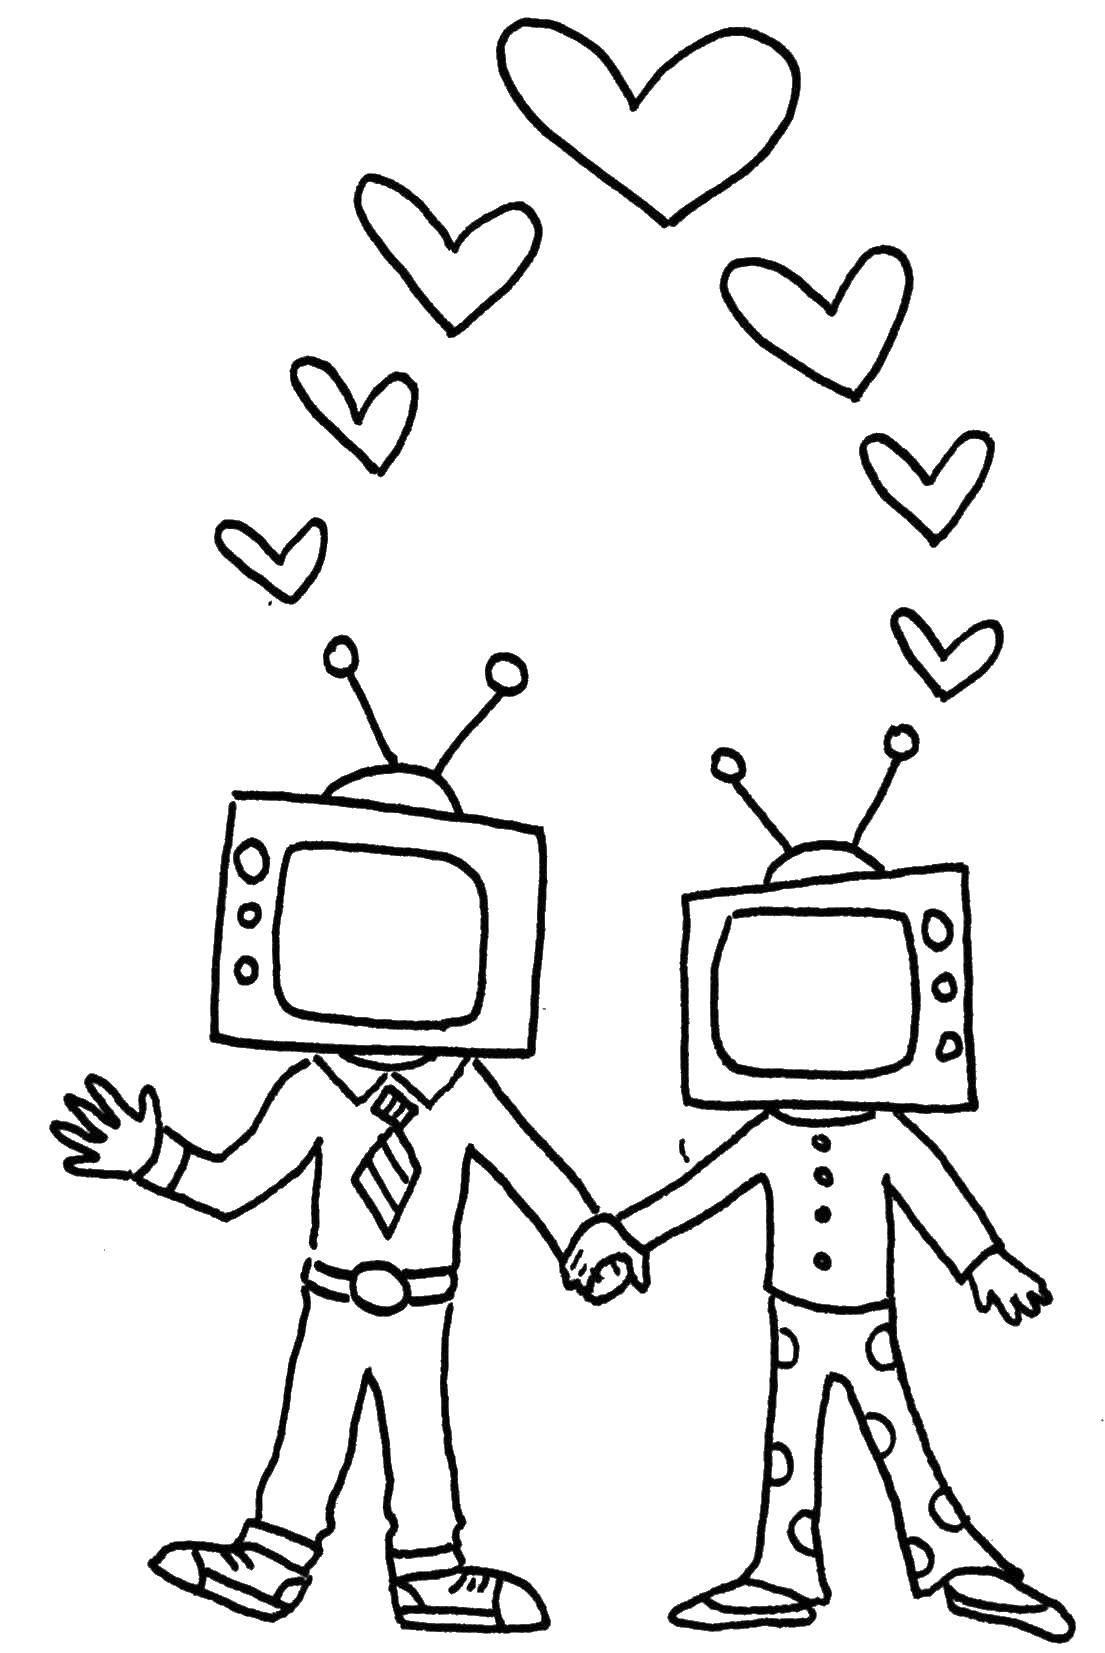 Название: Раскраска Влюбленные телевизоры. Категория: Я тебя люблю. Теги: любовь, телевизор, .